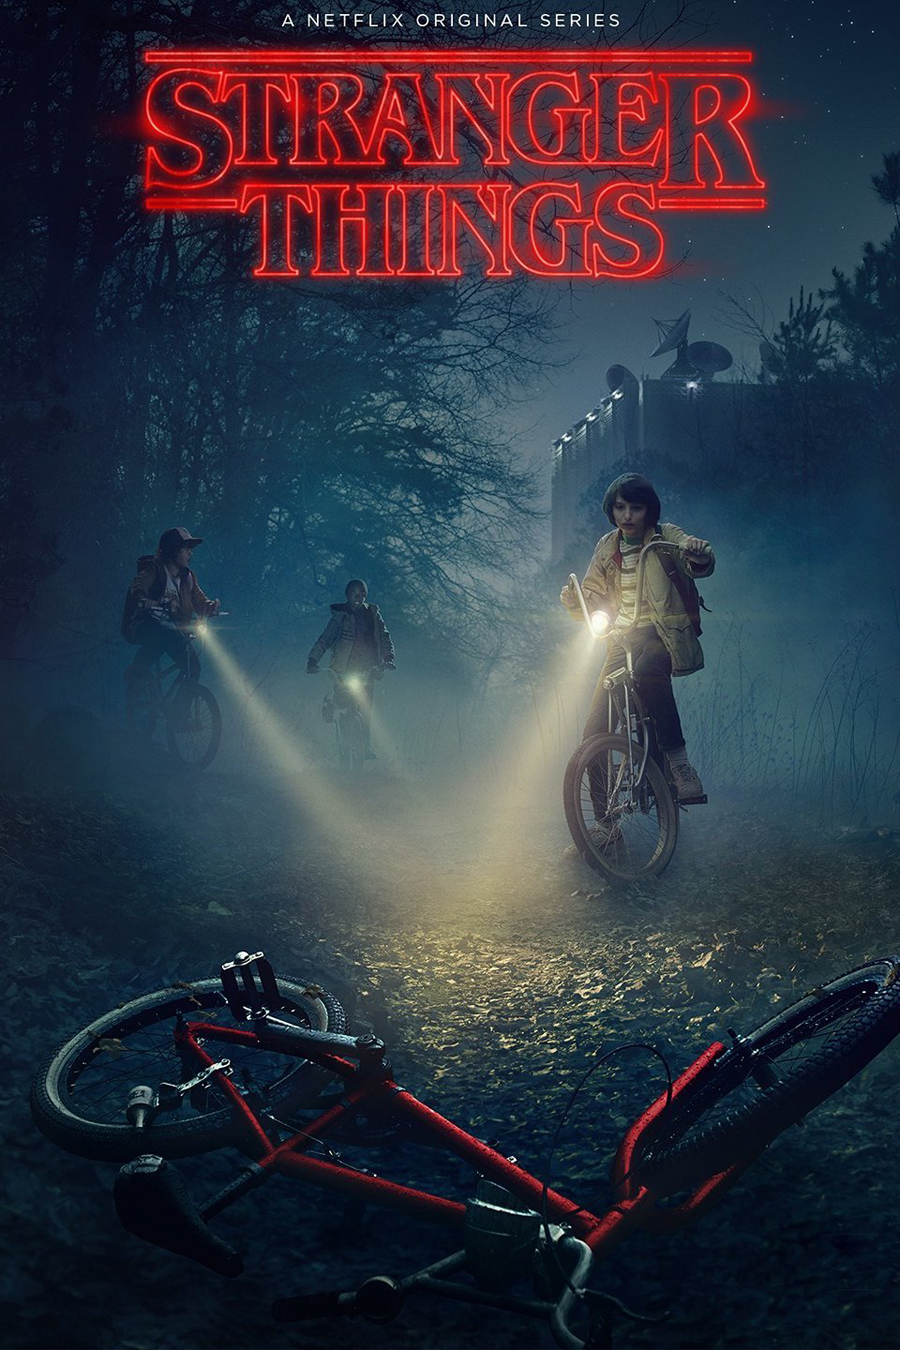 Stranger Things, lo mejor del cine de los ochentas en una serie del 2016 4